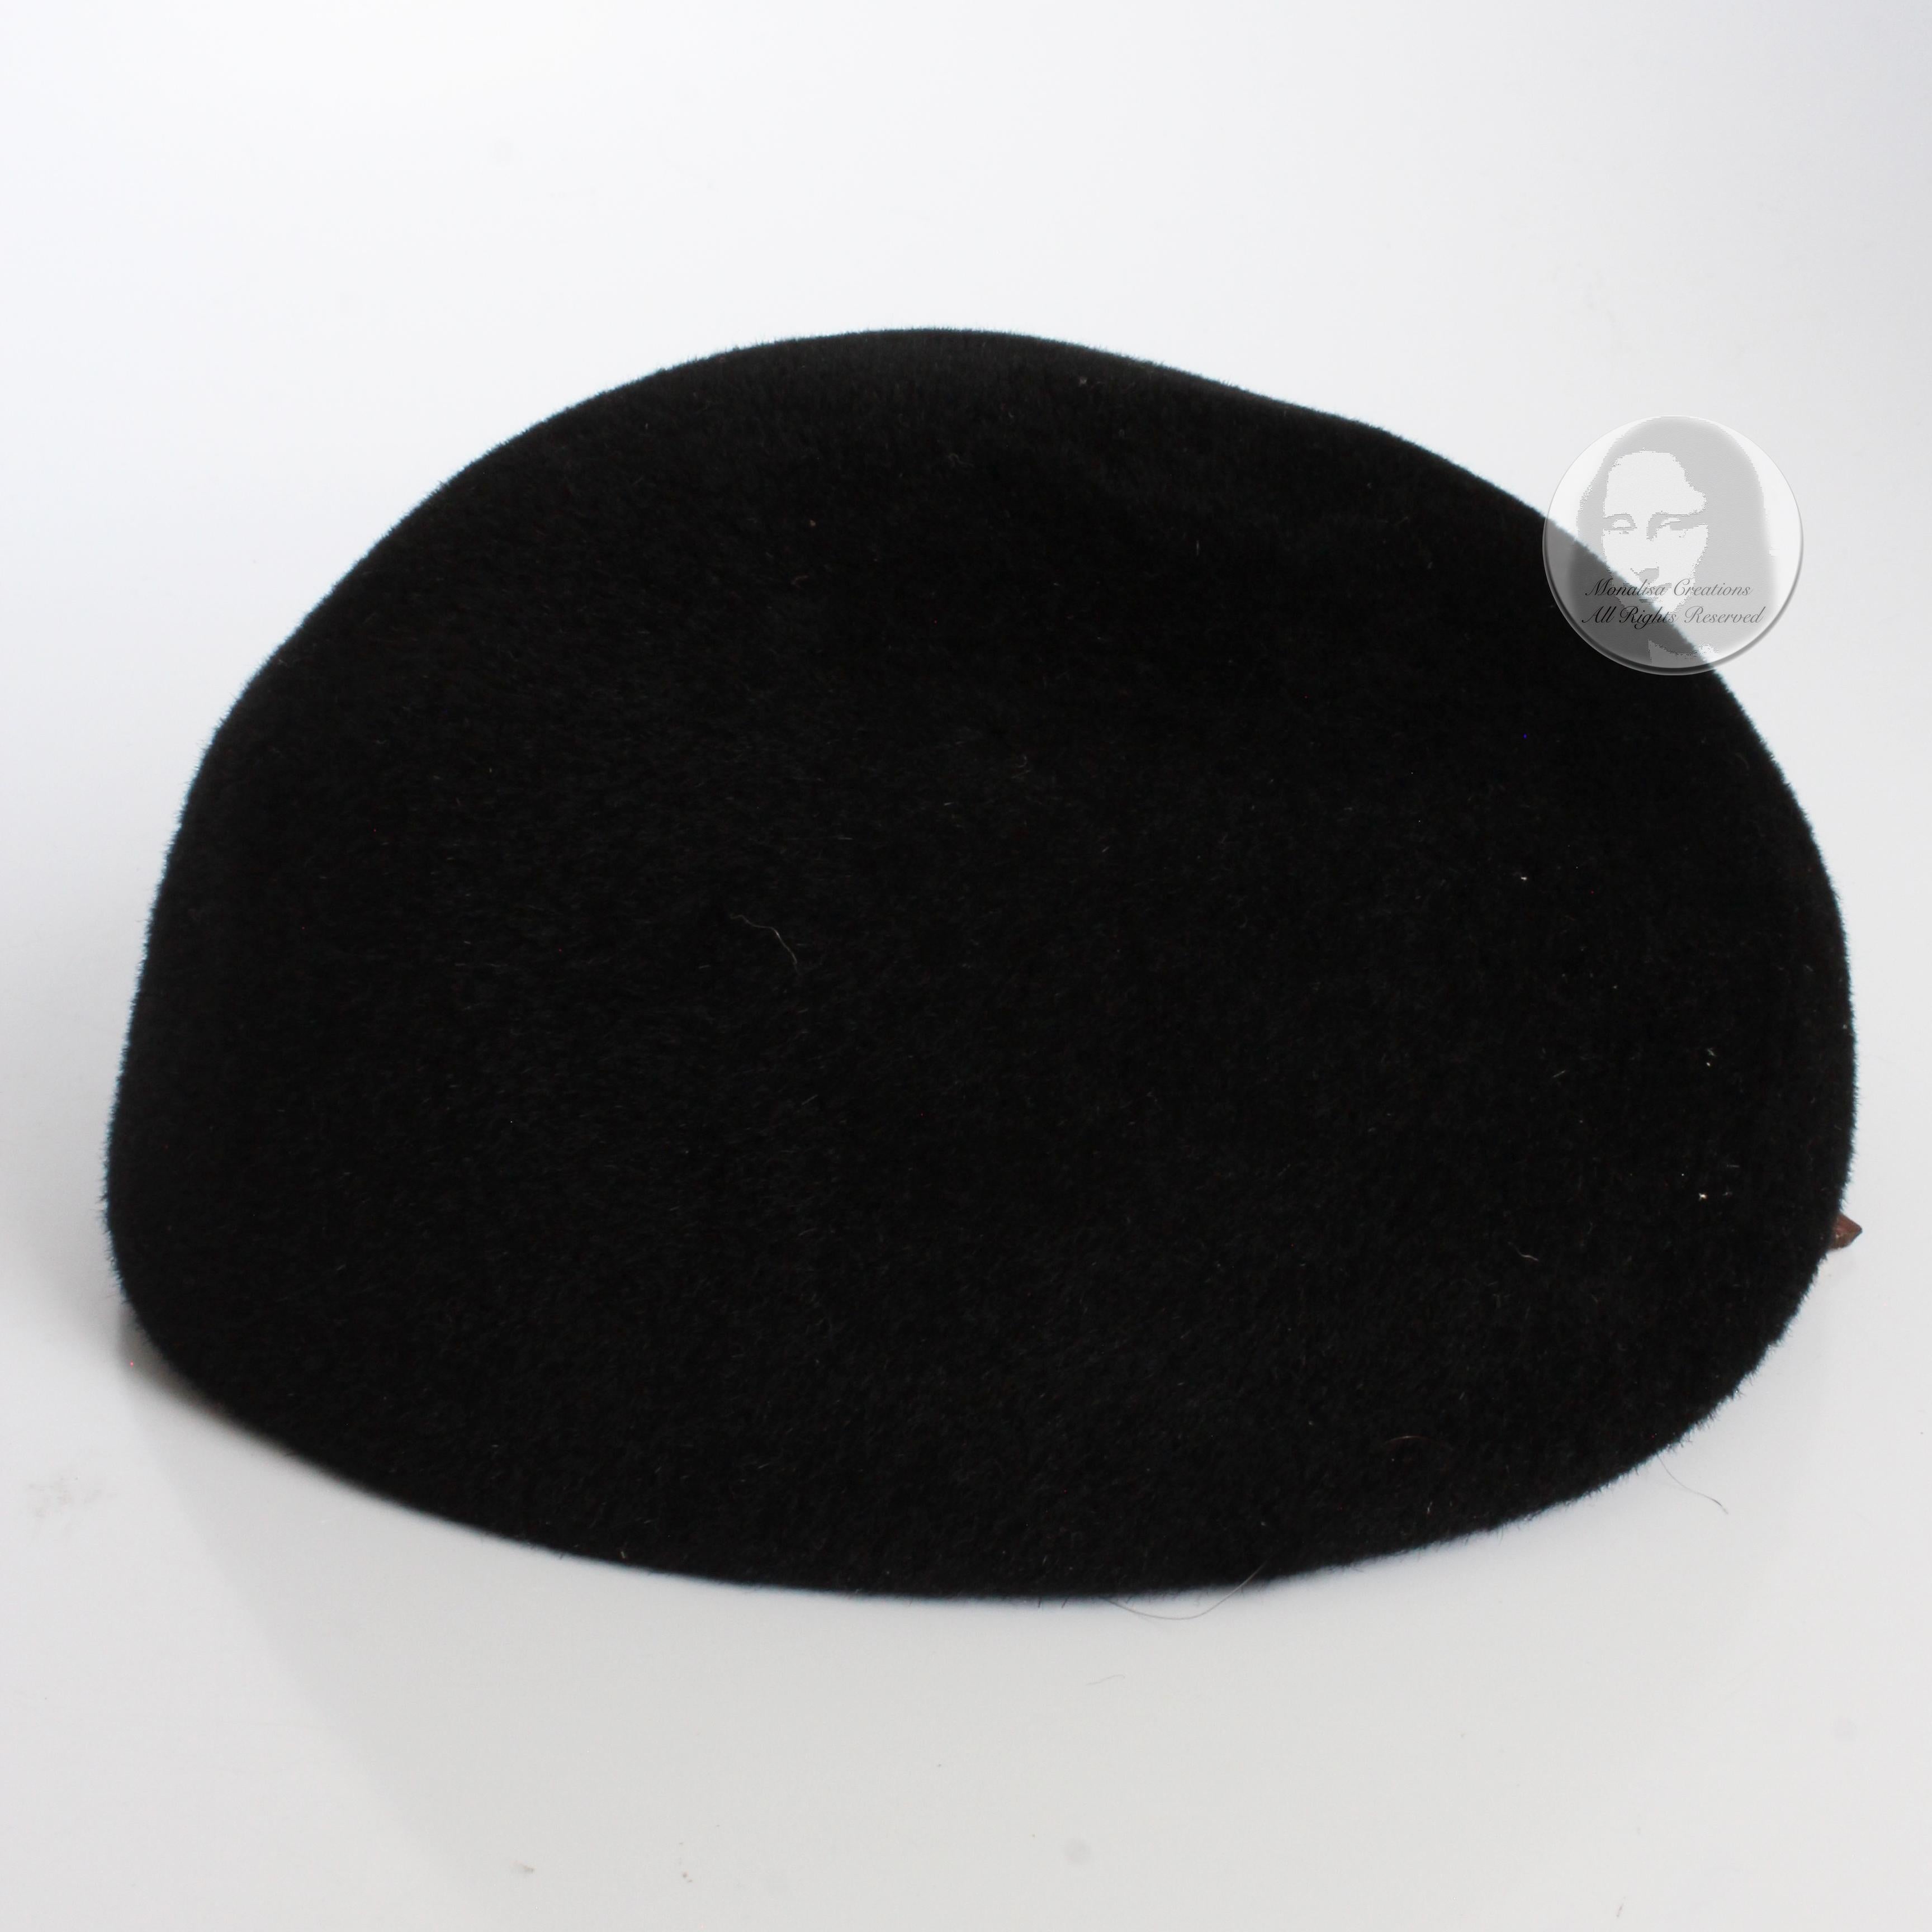 Frank Olive for I. Magnin Hat Calot Juliette Black Velour Vintage Cocktail Hat For Sale 2